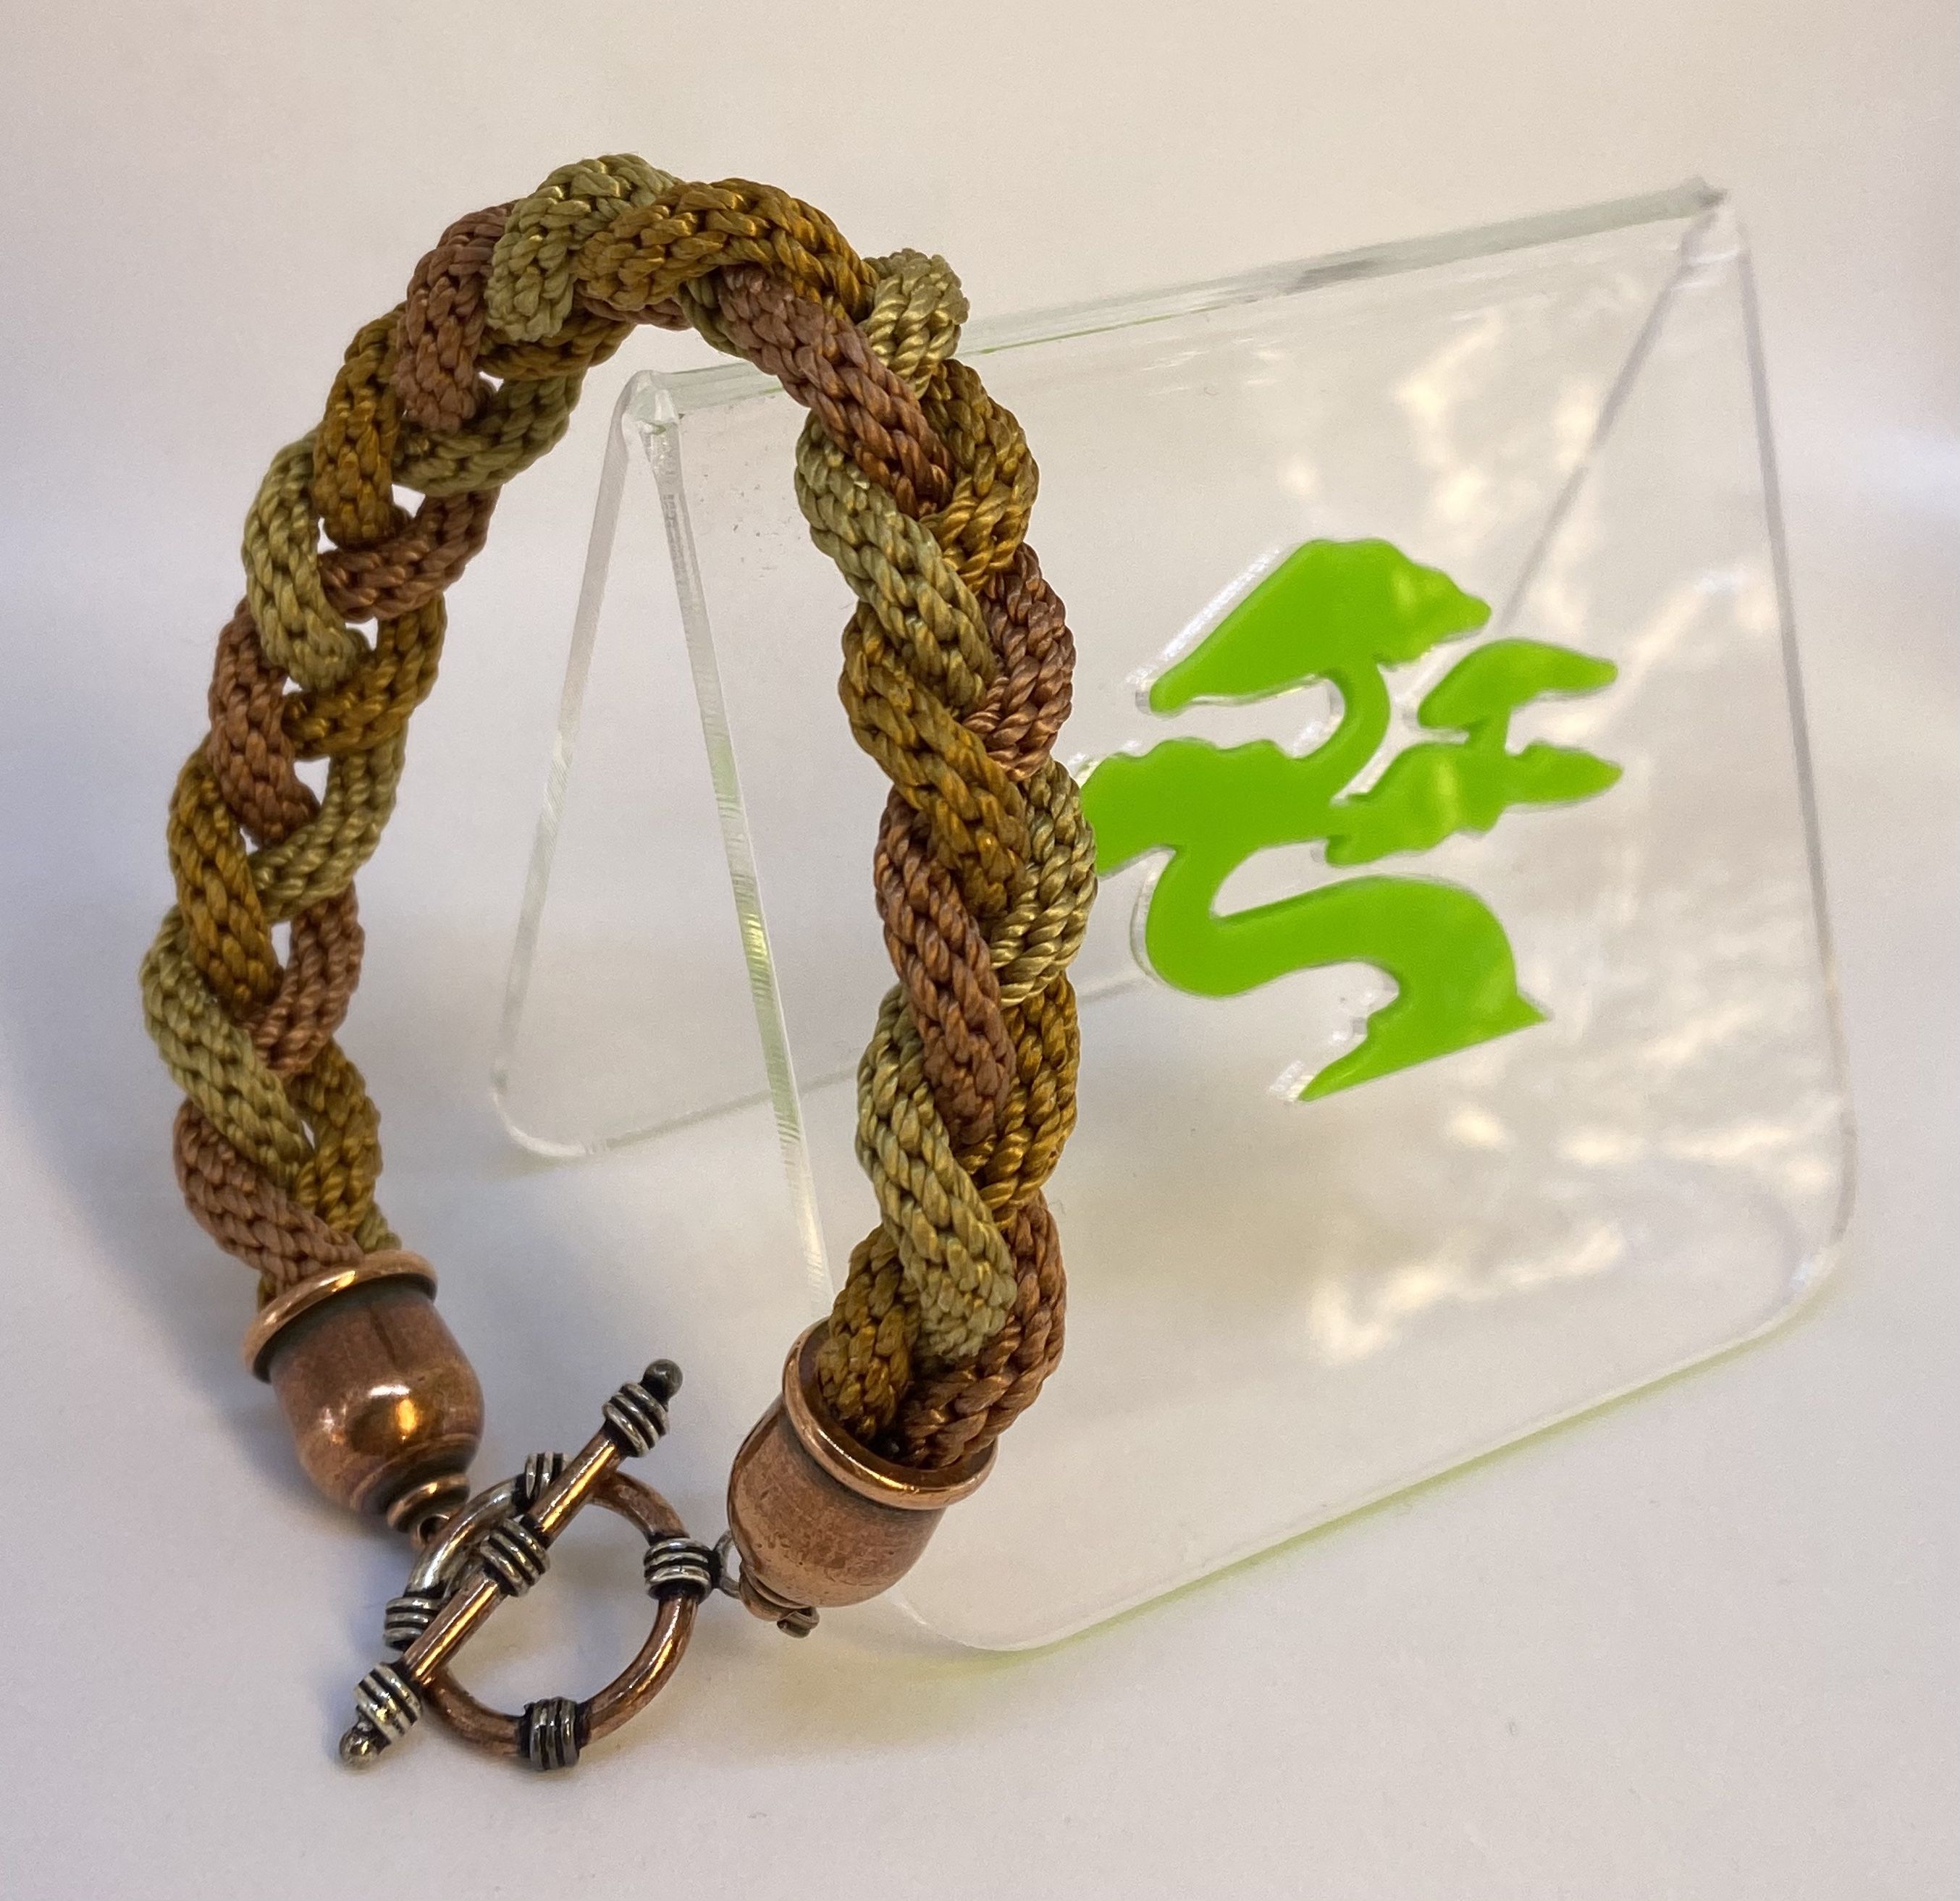 Triple Plaited Braided/Woven Kumihimo Bracelet -Copper/Brown/Dark Beige Colours -Handmade Japanese Wristband/Bracelet